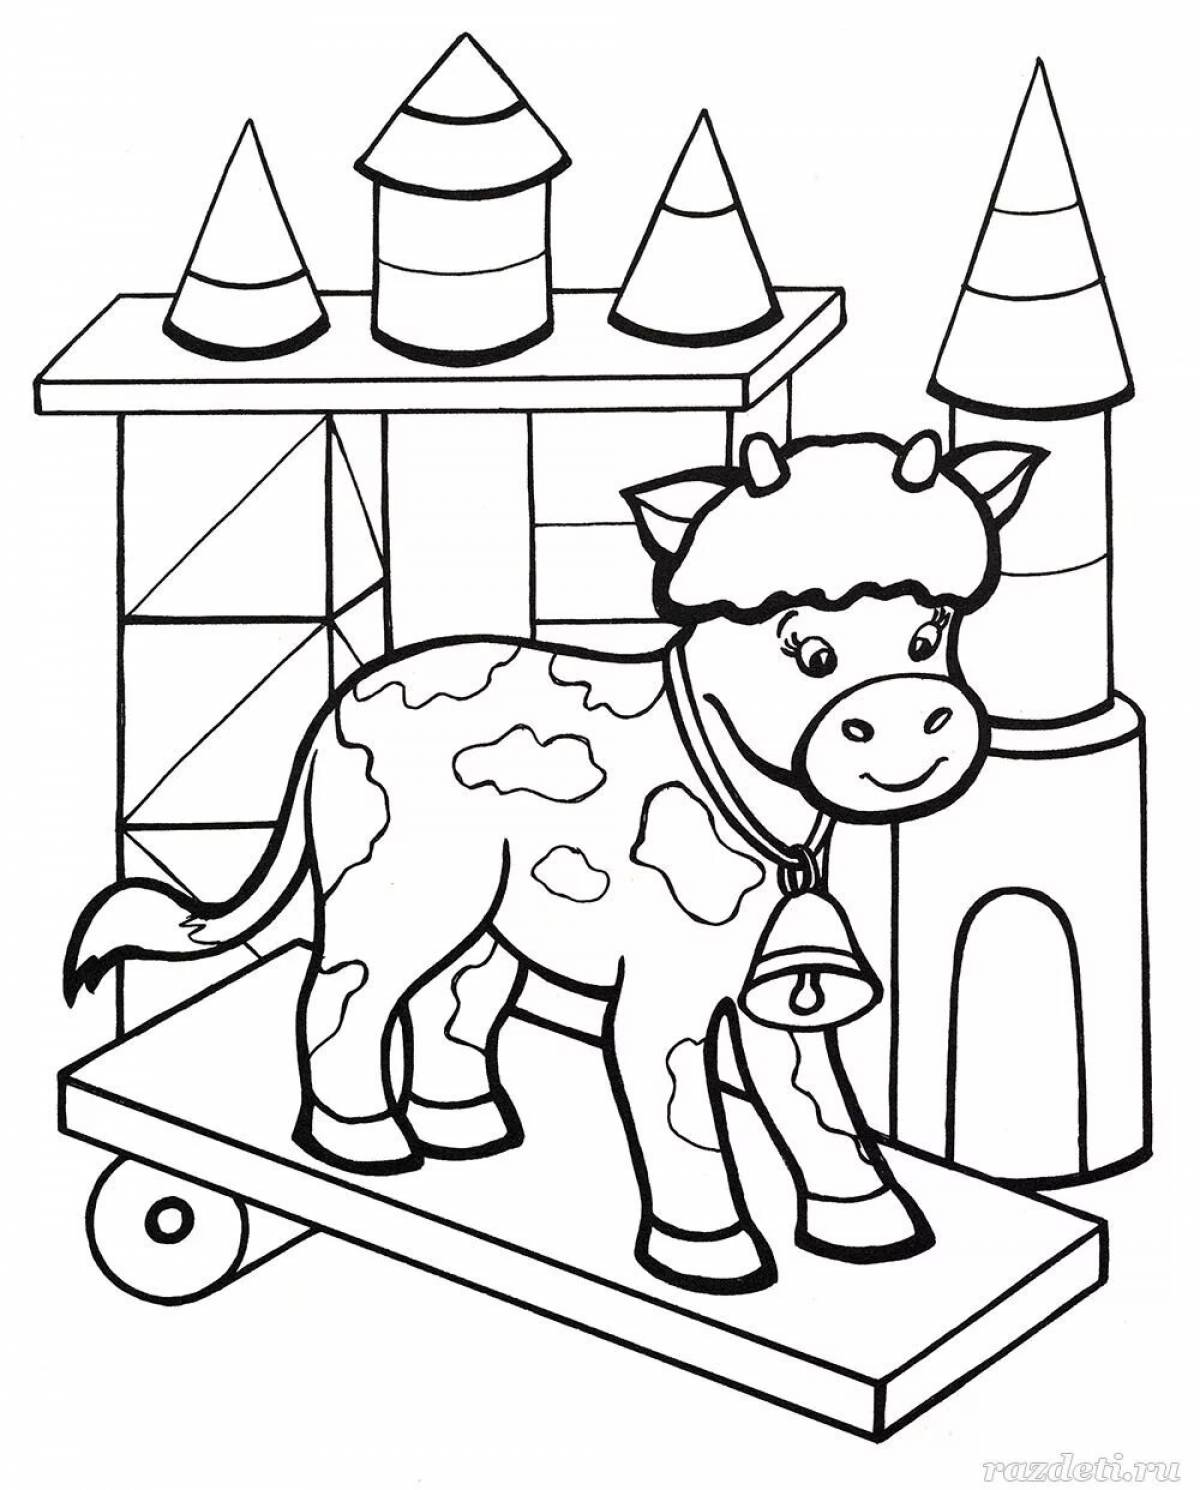 Coloring big bull for kids